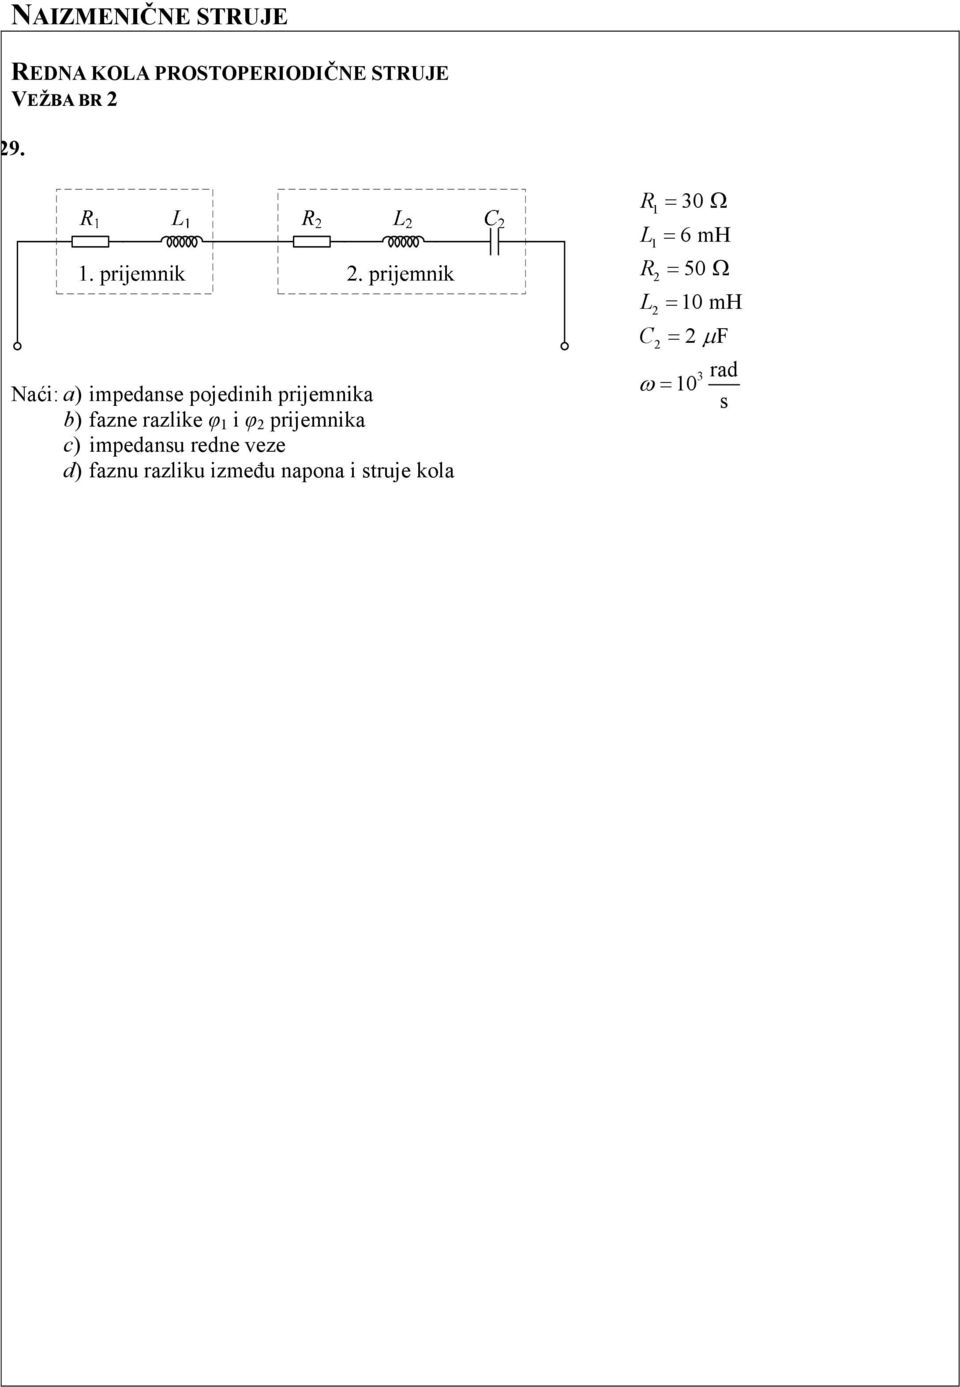 prijemnika c) impedansu redne veze d) faznu razliku između napona i